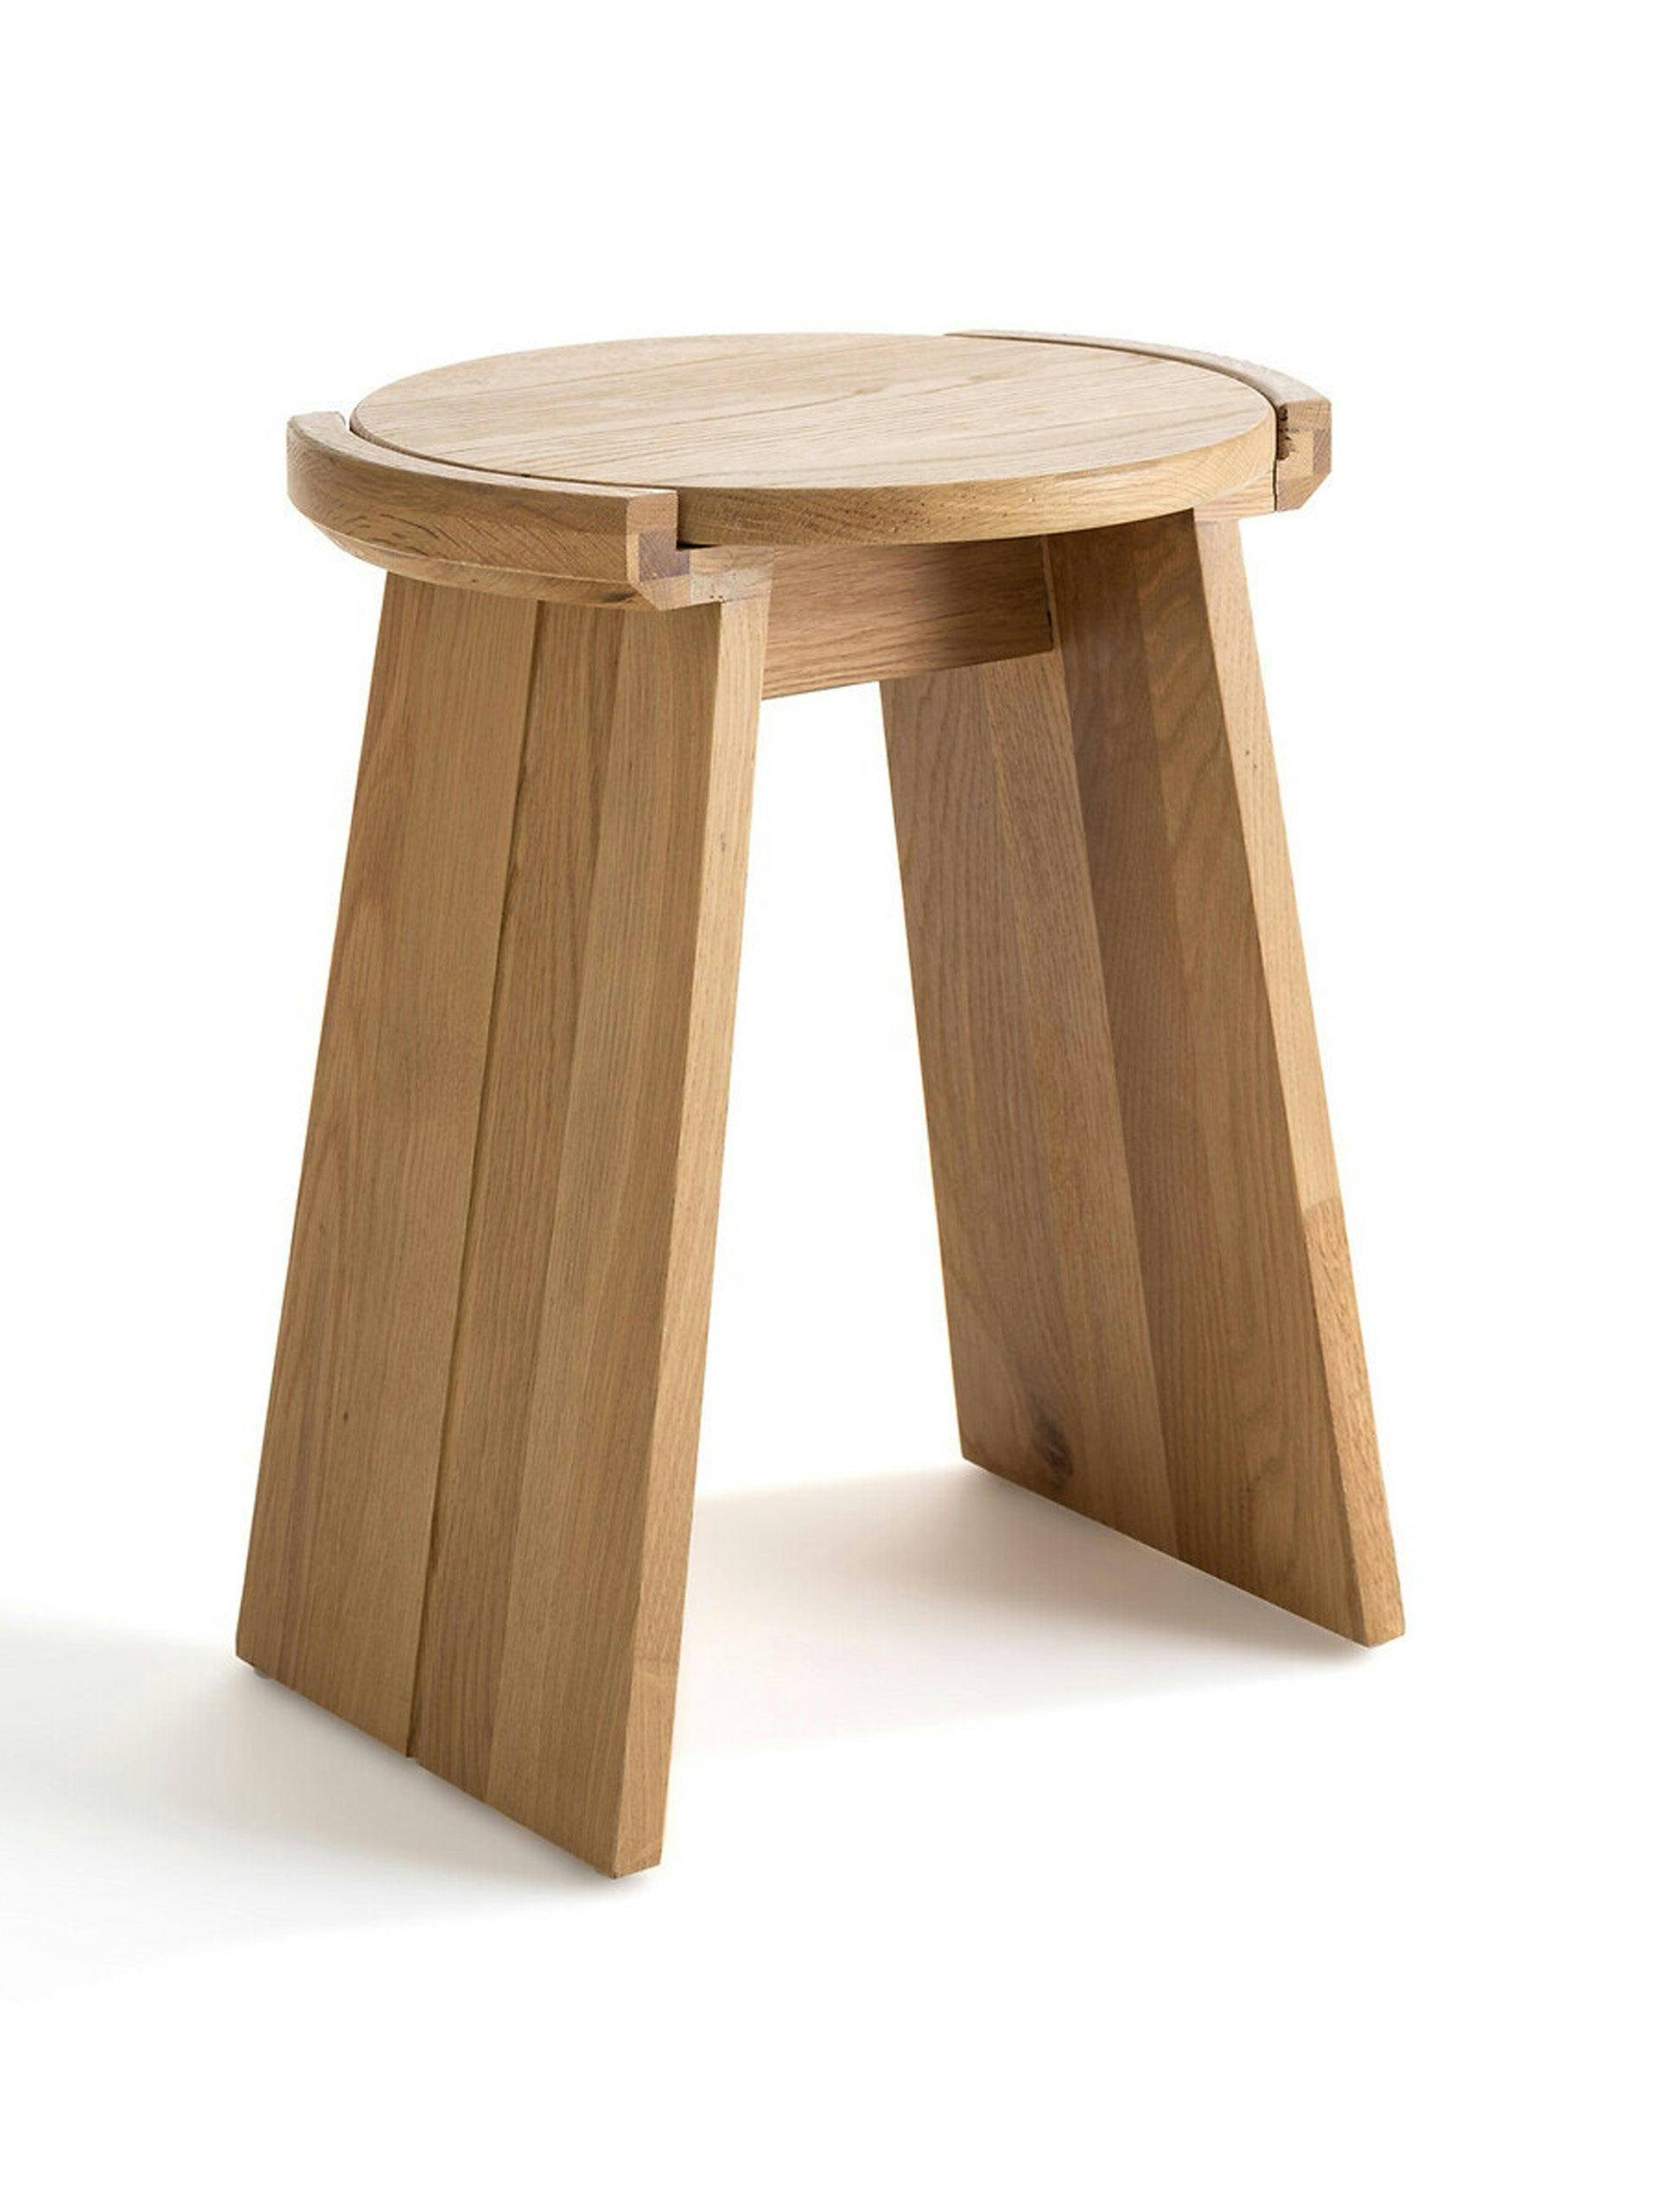 Tibet solid oak stool/side table